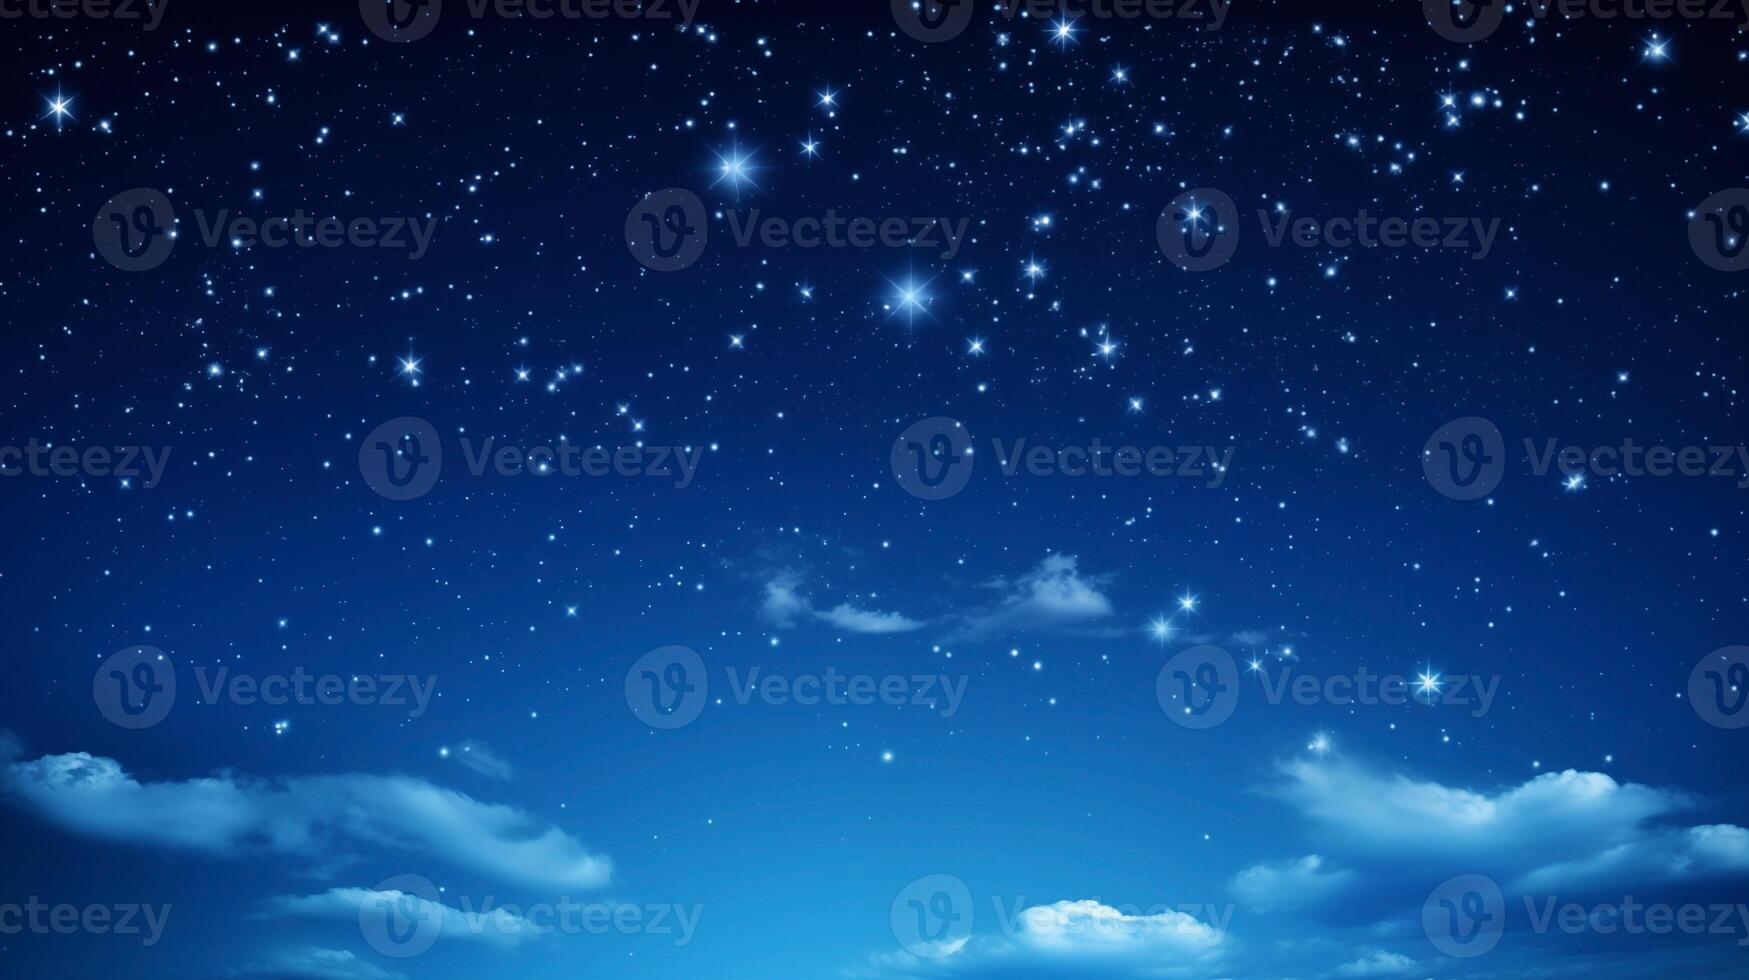 etéreo azul nuvens espalhados através uma estrelado noite céu fundo foto